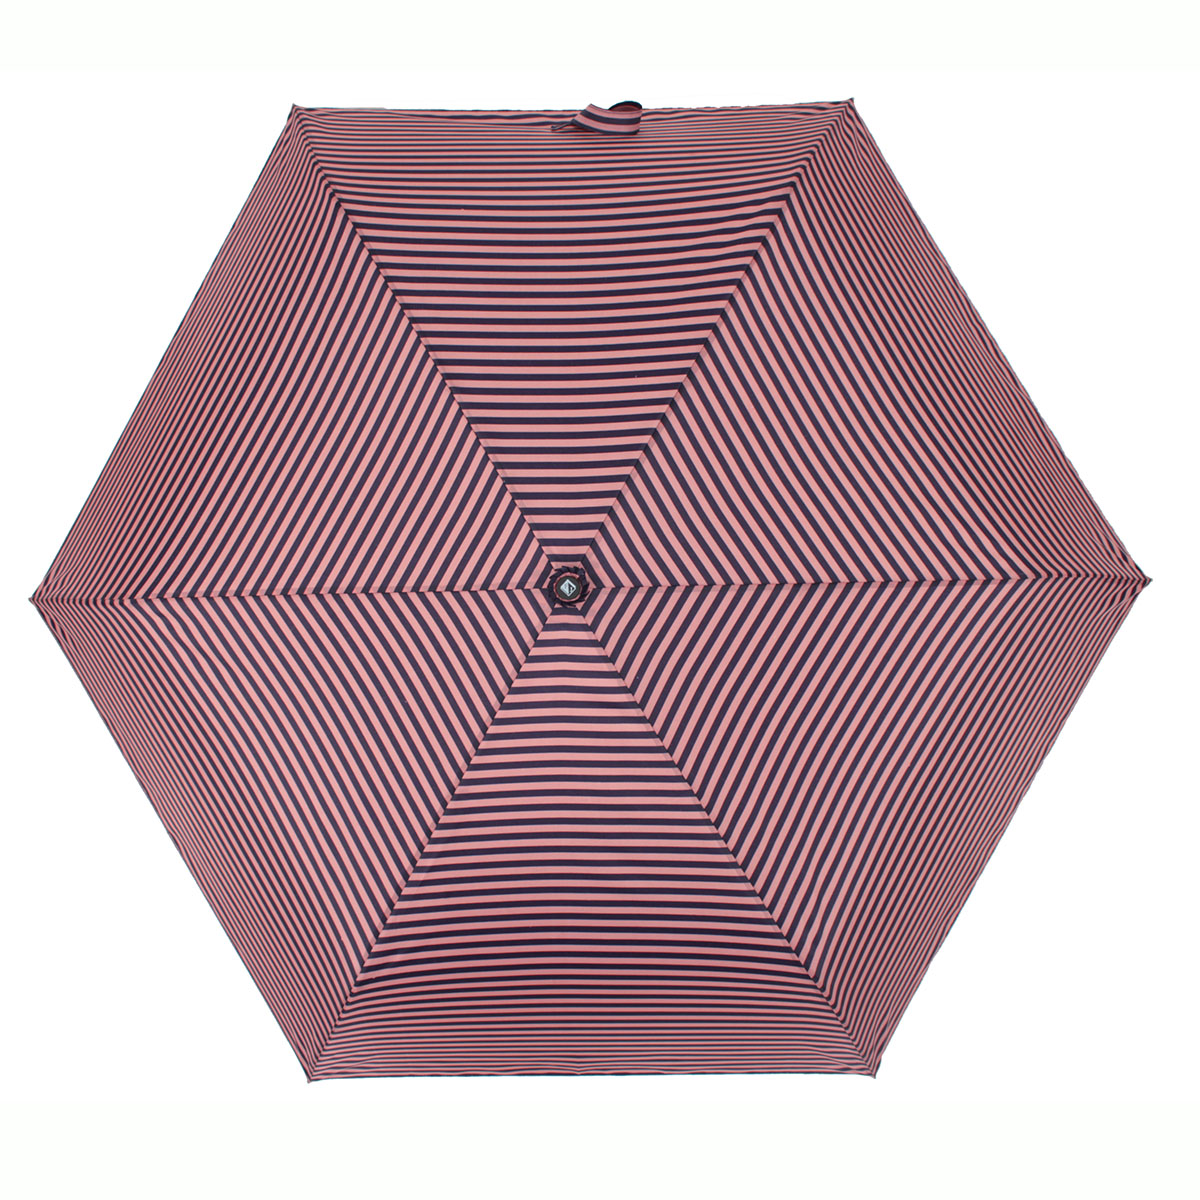 Зонт складной женский автоматический Flioraj 6081 FJ розовый  - купить